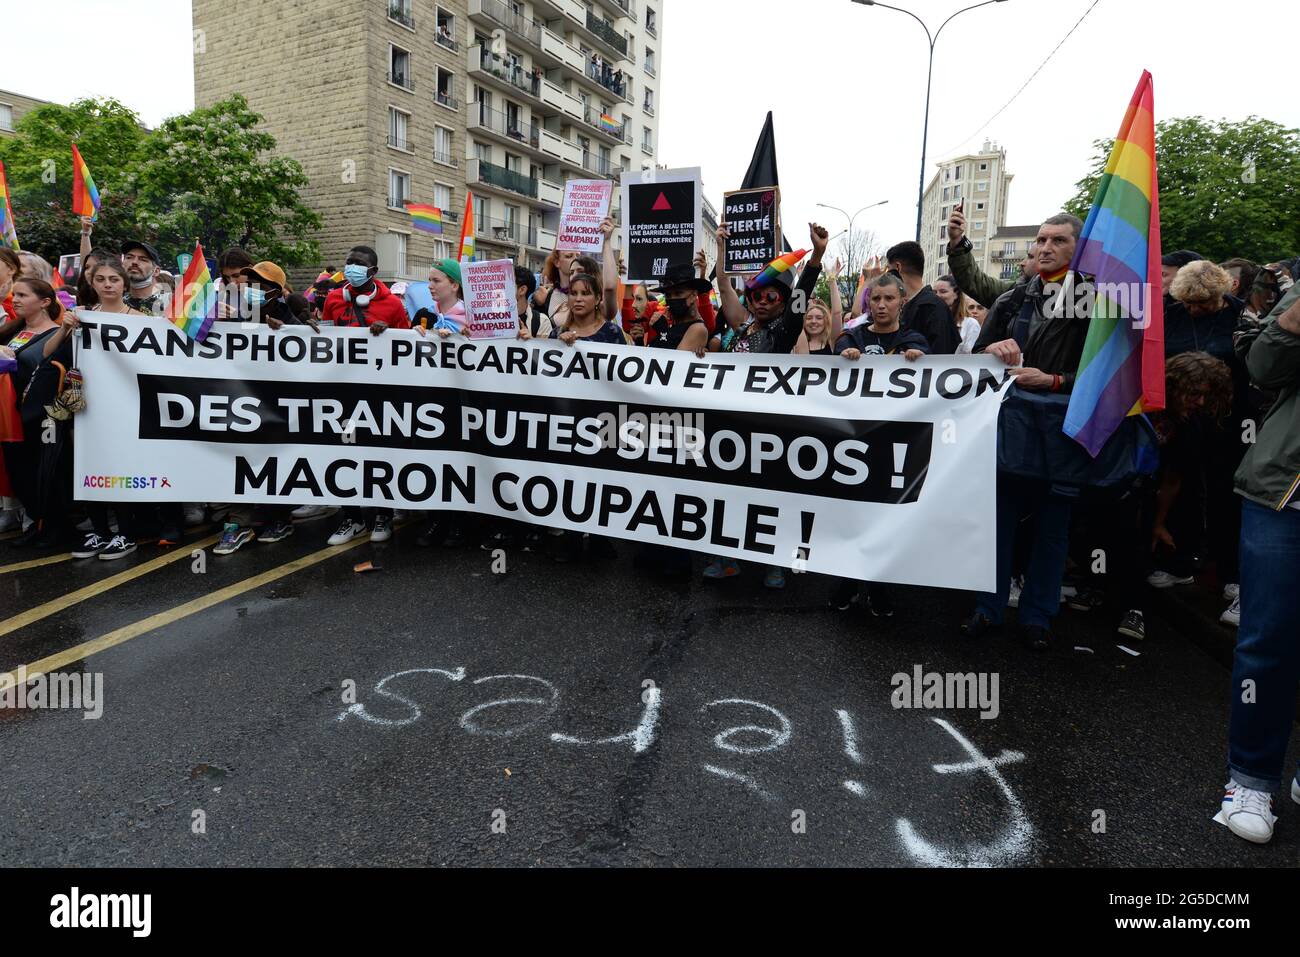 La Marche de la fierté de Paris 2021 part de la banlieue (Pantin) pour la première fois, la foule y était malgré l'absence de chars Banque D'Images